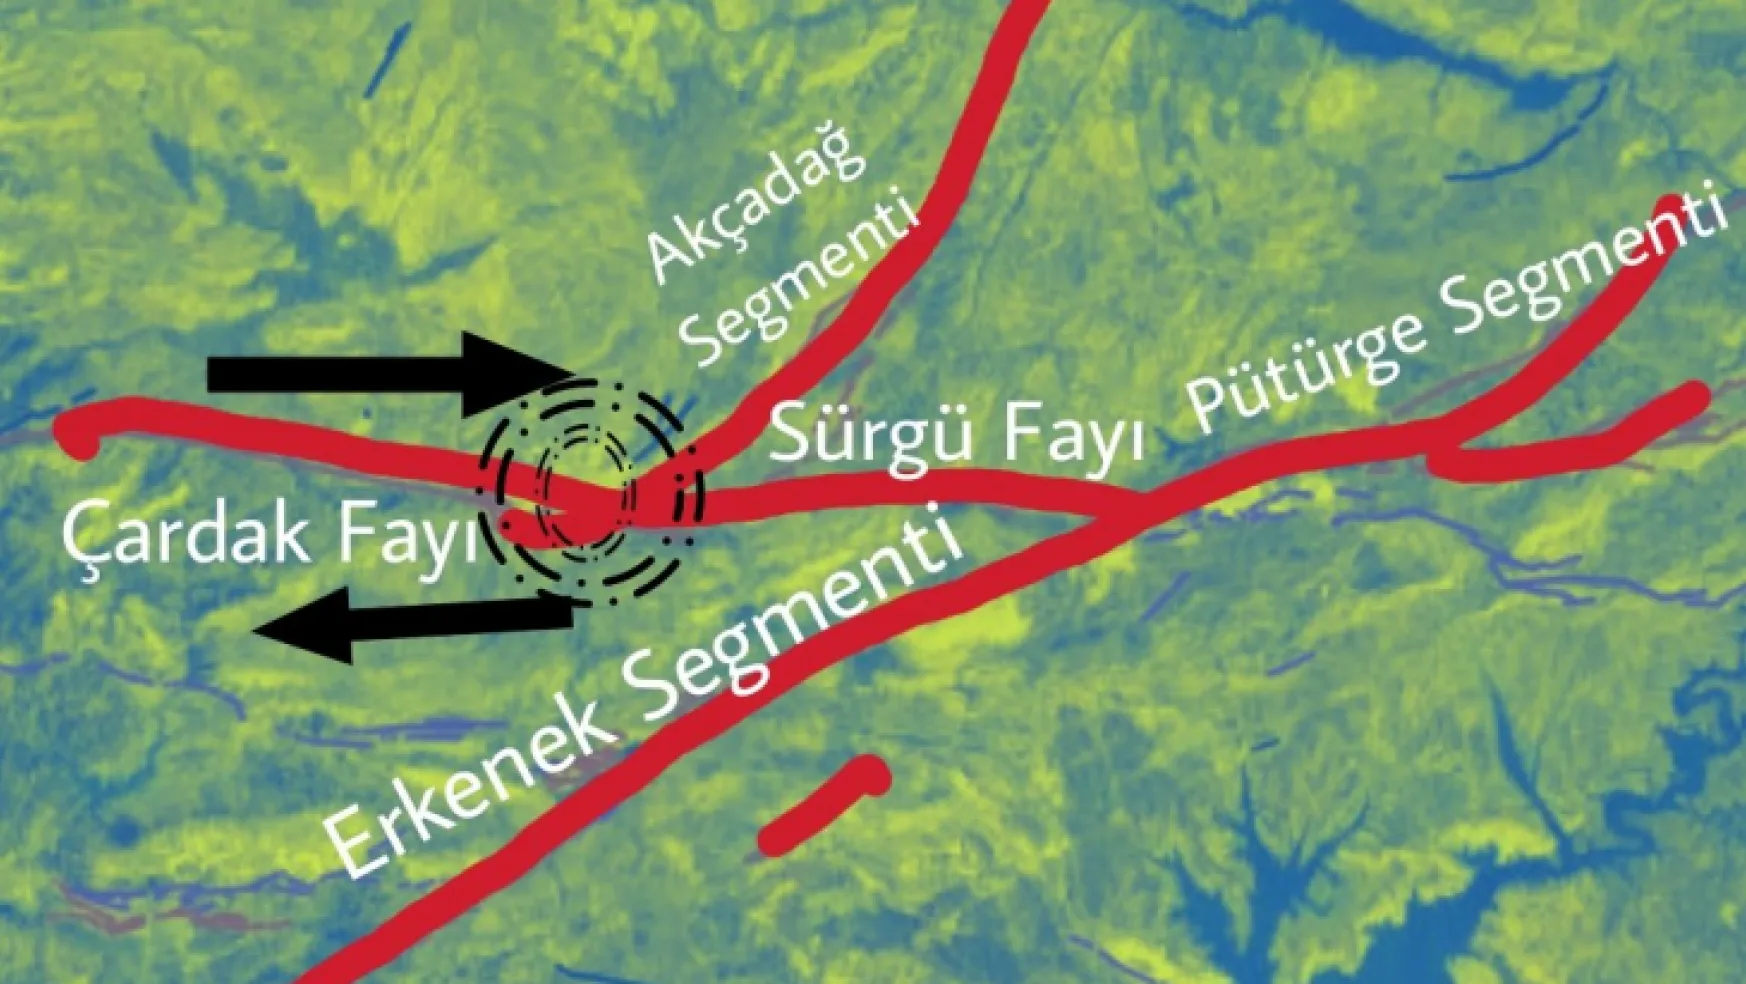 Maden Jeolojisi Yer Bilimleri ve Deprem Uzmanı Serkan İçelli, Malatya'daki faylarla ilgili bilgiler paylaştı.